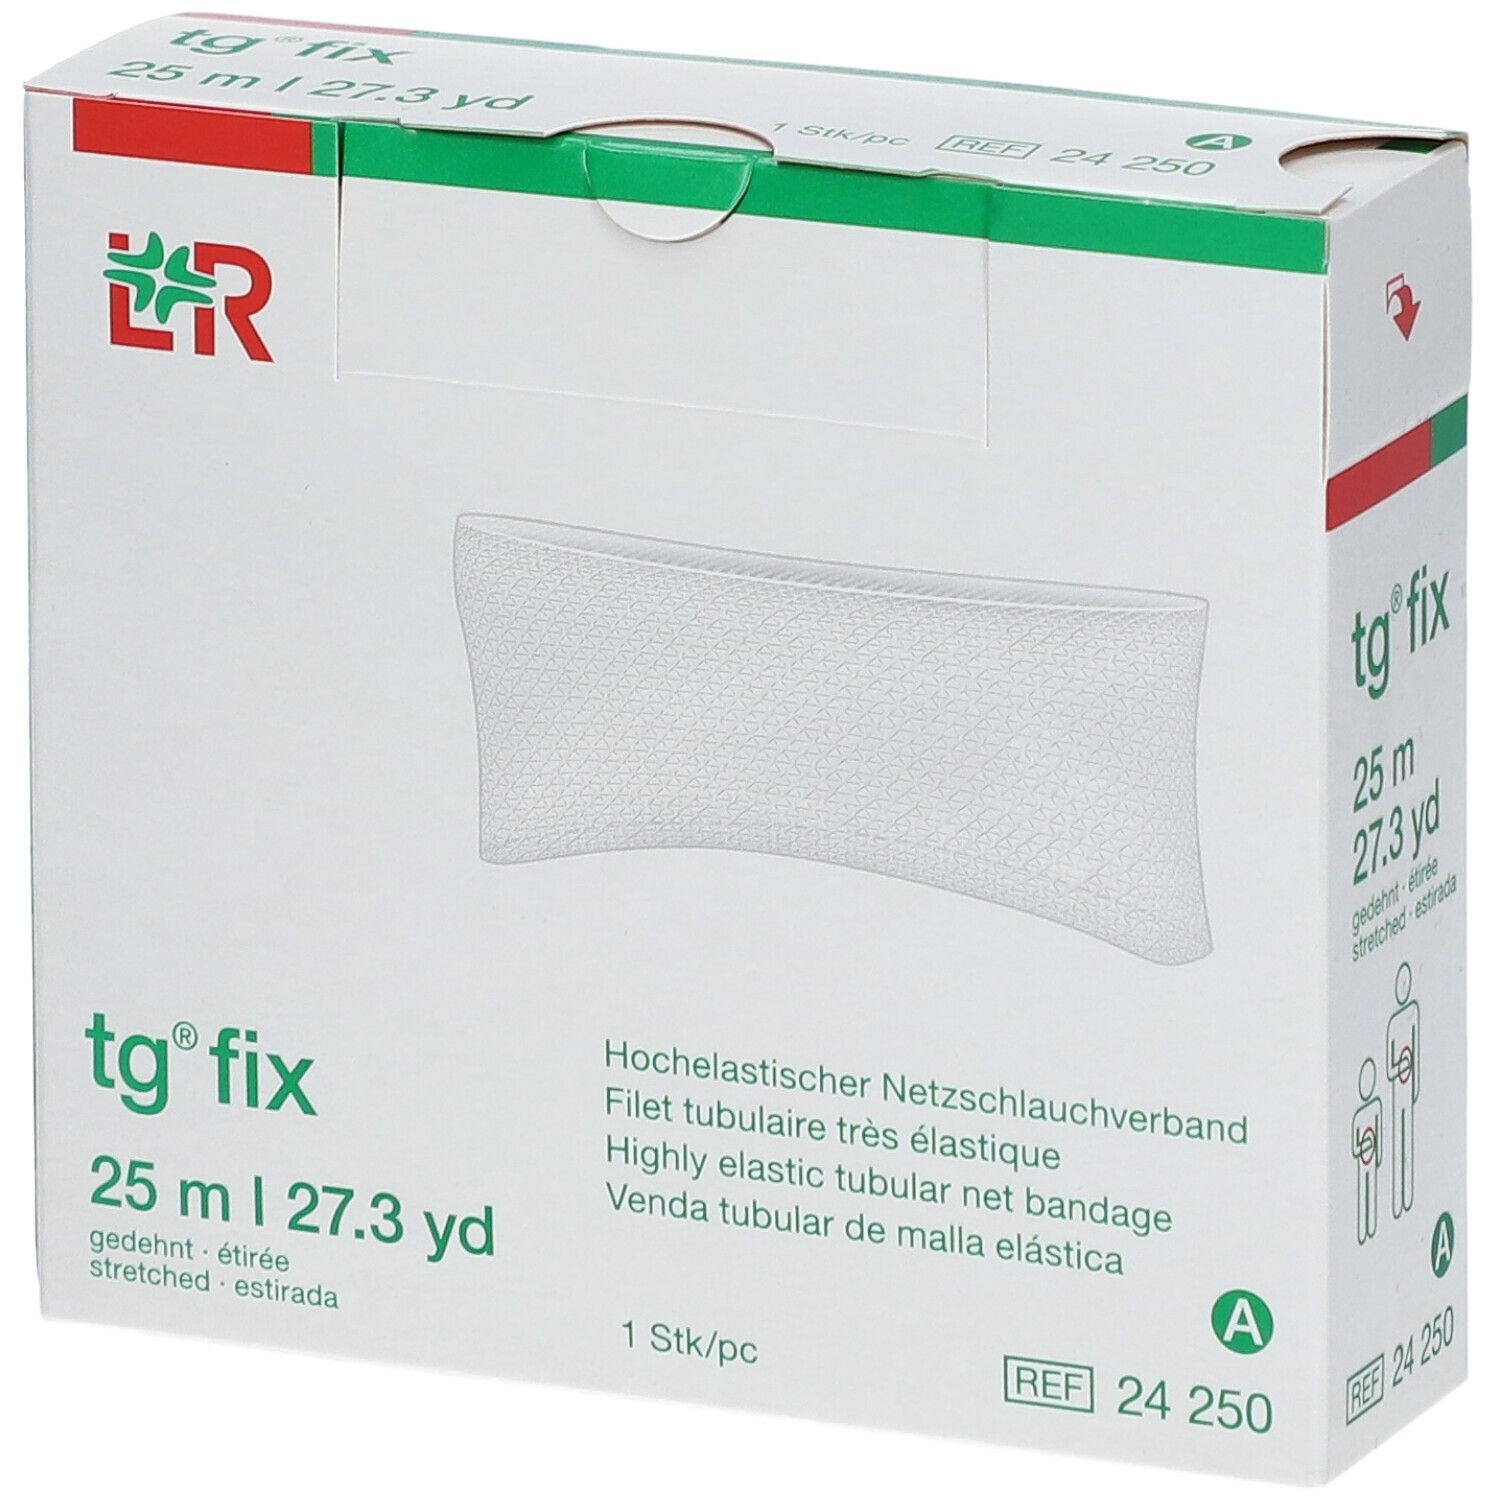 Lohmann & Rauscher tg® fix A pour doigt 25 m bandage(s)